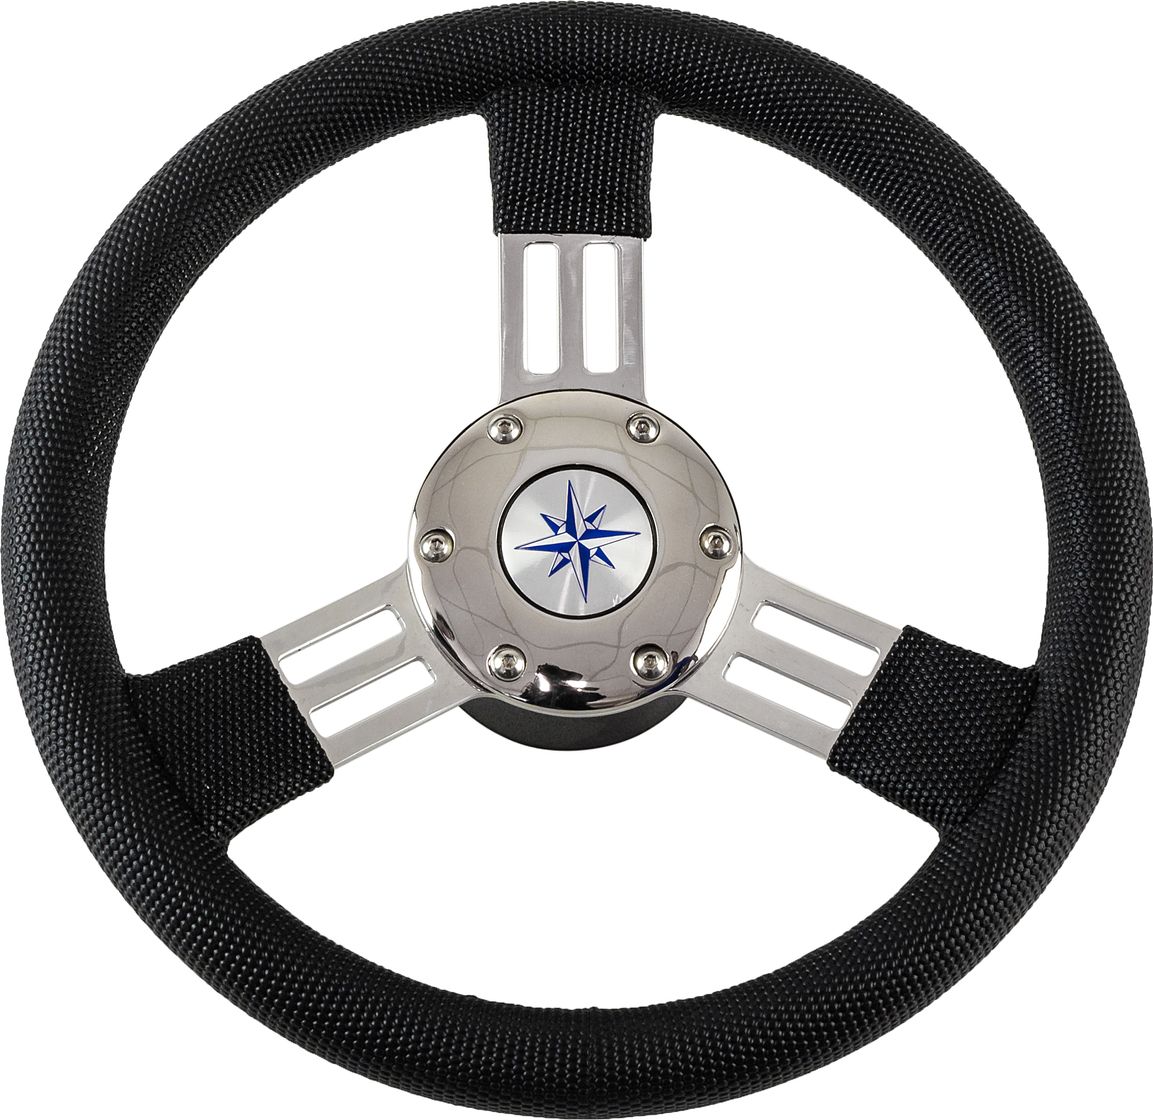 Рулевое колесо PEGASO обод черный, спицы серебряные д. 300 мм VN13327-01 рулевое колесо leader tanegum обод серебряные спицы д 360 мм vn7360 01